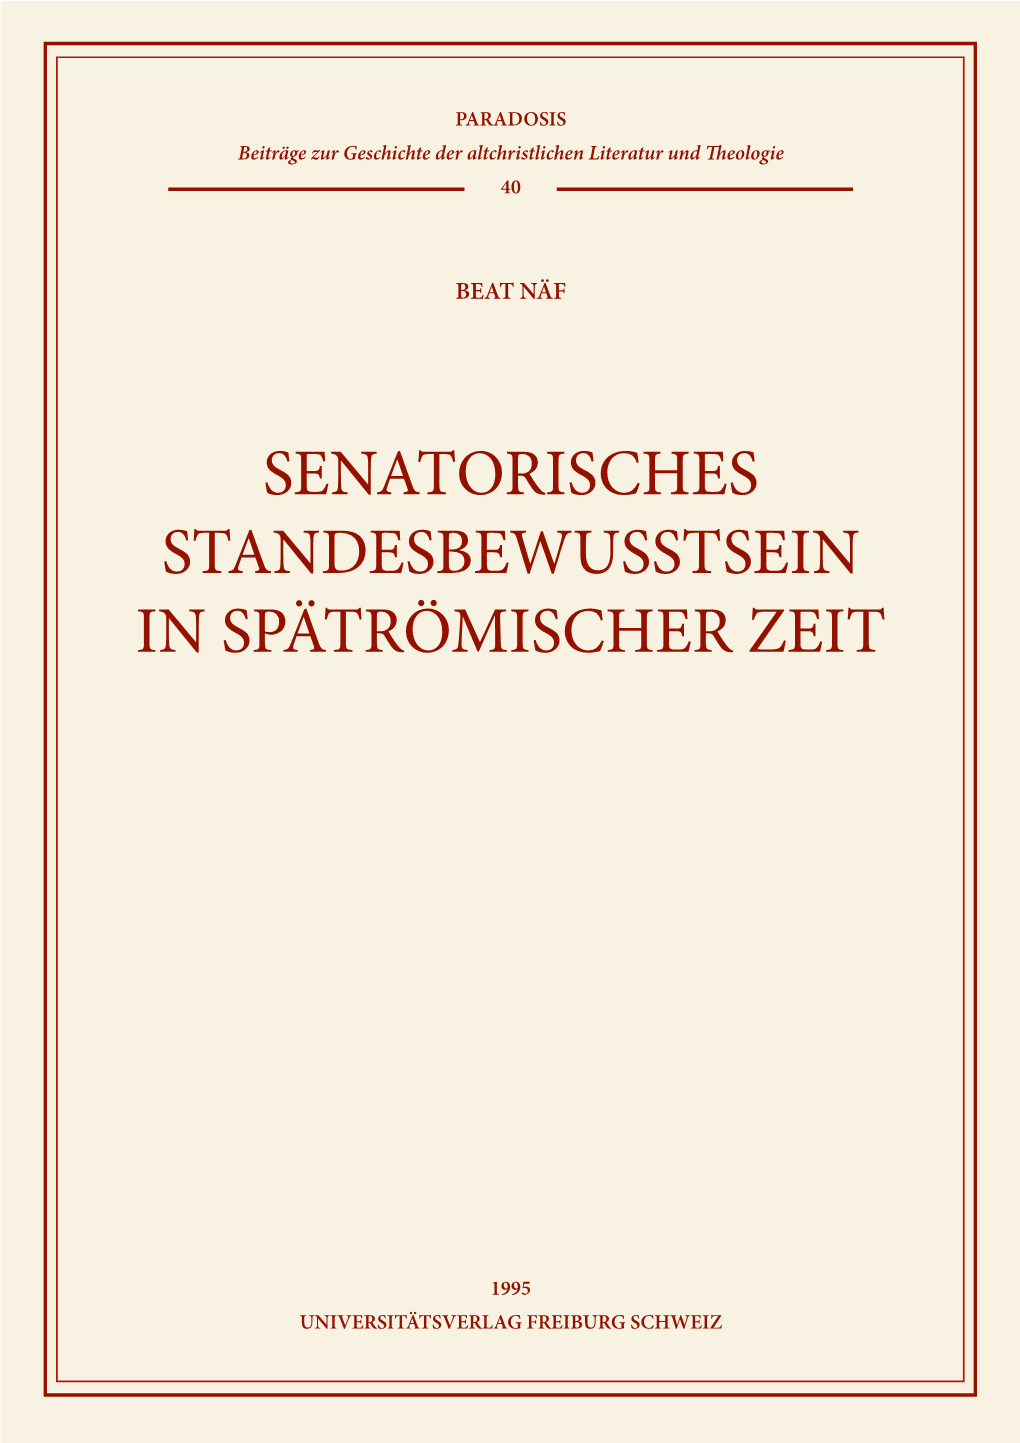 Senatorisches Standesbewusstsein in Spätrömischer Zeit, Fribourg 1995